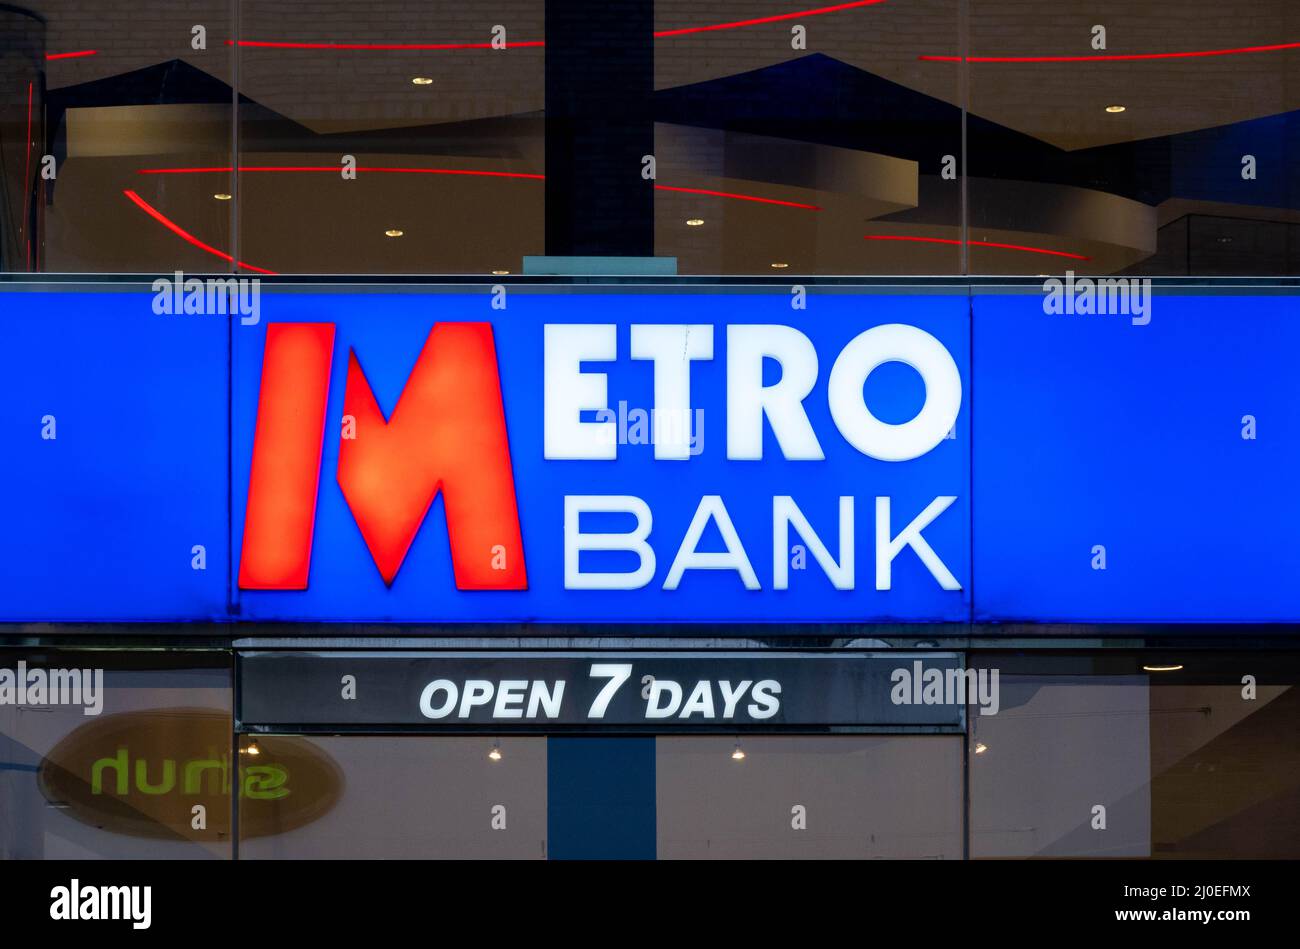 Metro Bank affiche sur une fenêtre indiquant que la banque du centre-ville de Liverpool est ouverte 7 jours sur 7 Banque D'Images